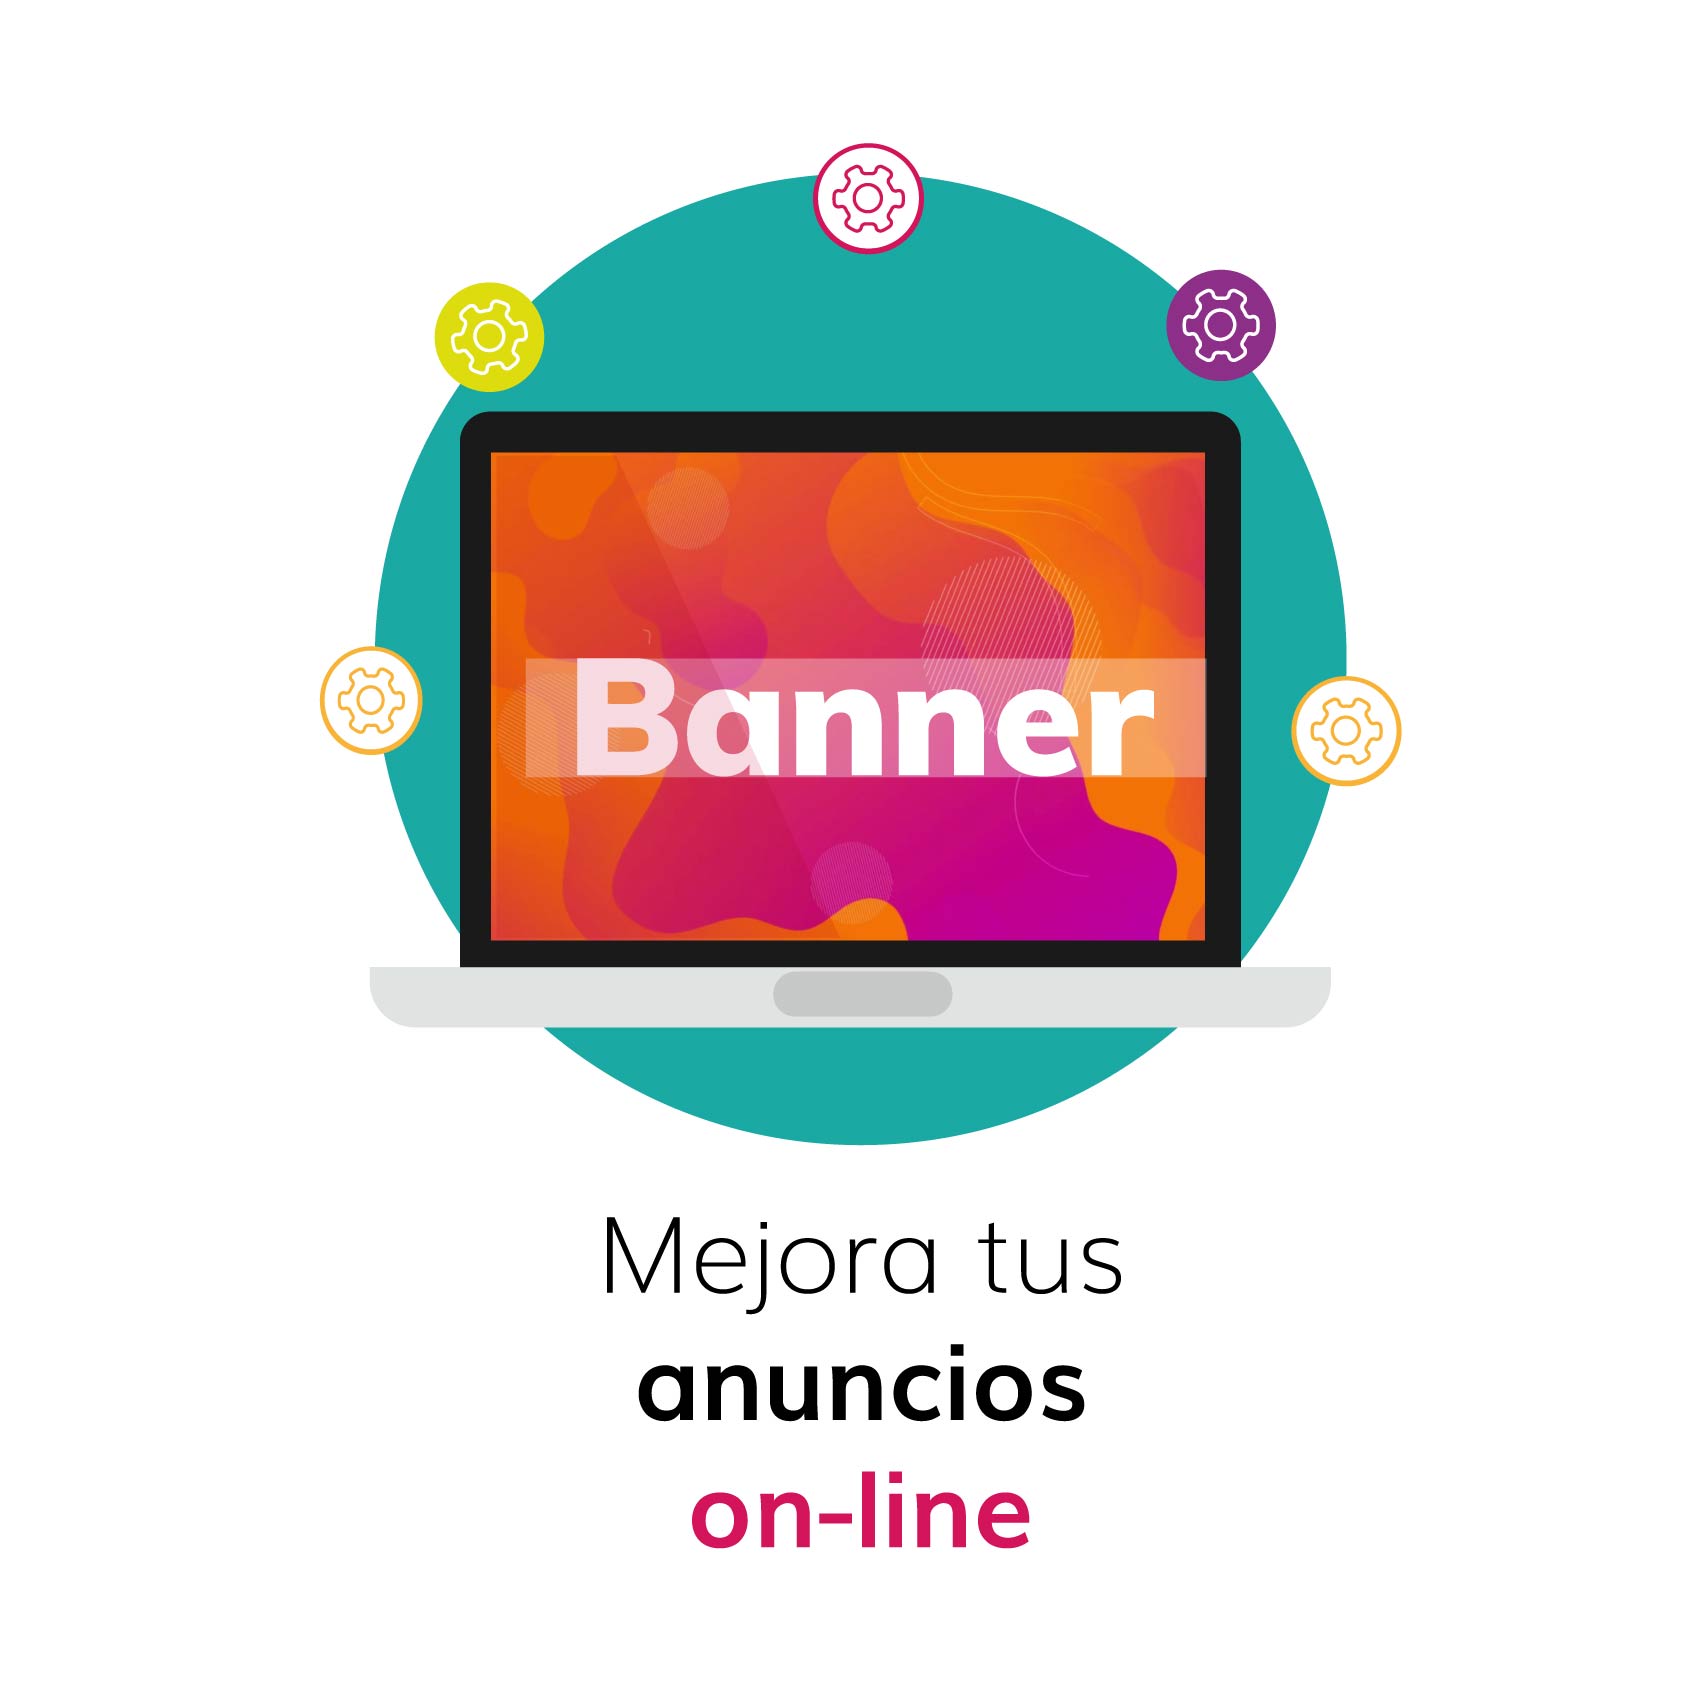 Mejora-tus-anuncios-on-line_ANUNCIO ON LINE